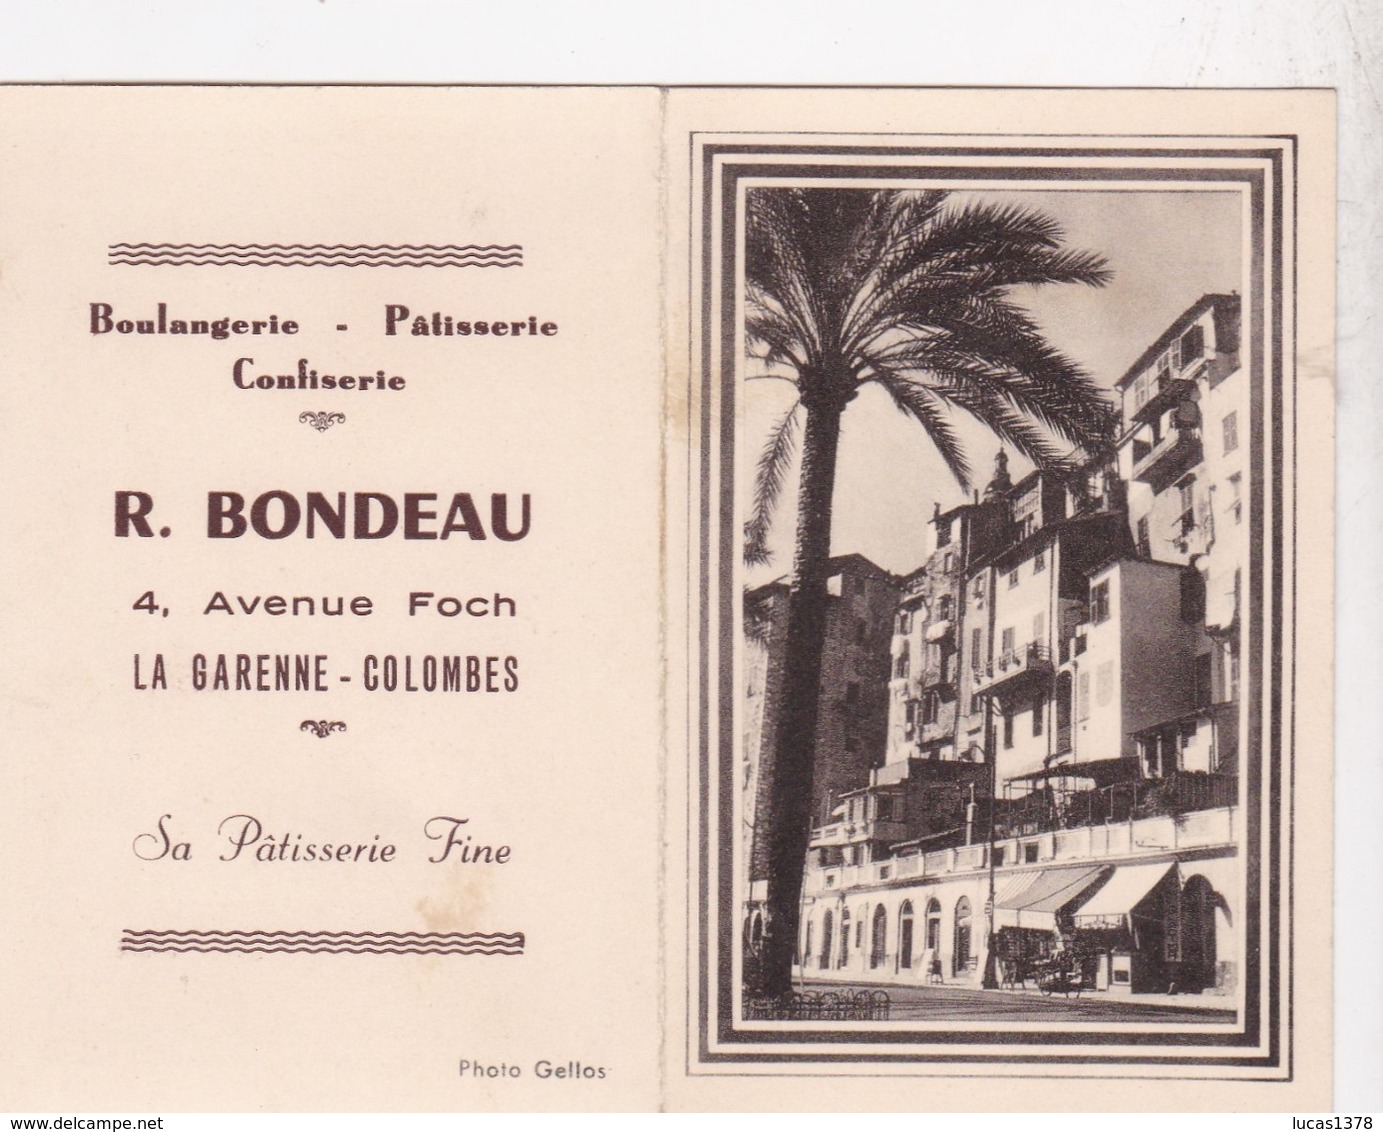 CALENDRIER 1956 / LA GARENNE COLOMBES / BOULANGERIE PATISSERIE BONDEAU / 4 AVENUE FOCH - Kleinformat : 1941-60